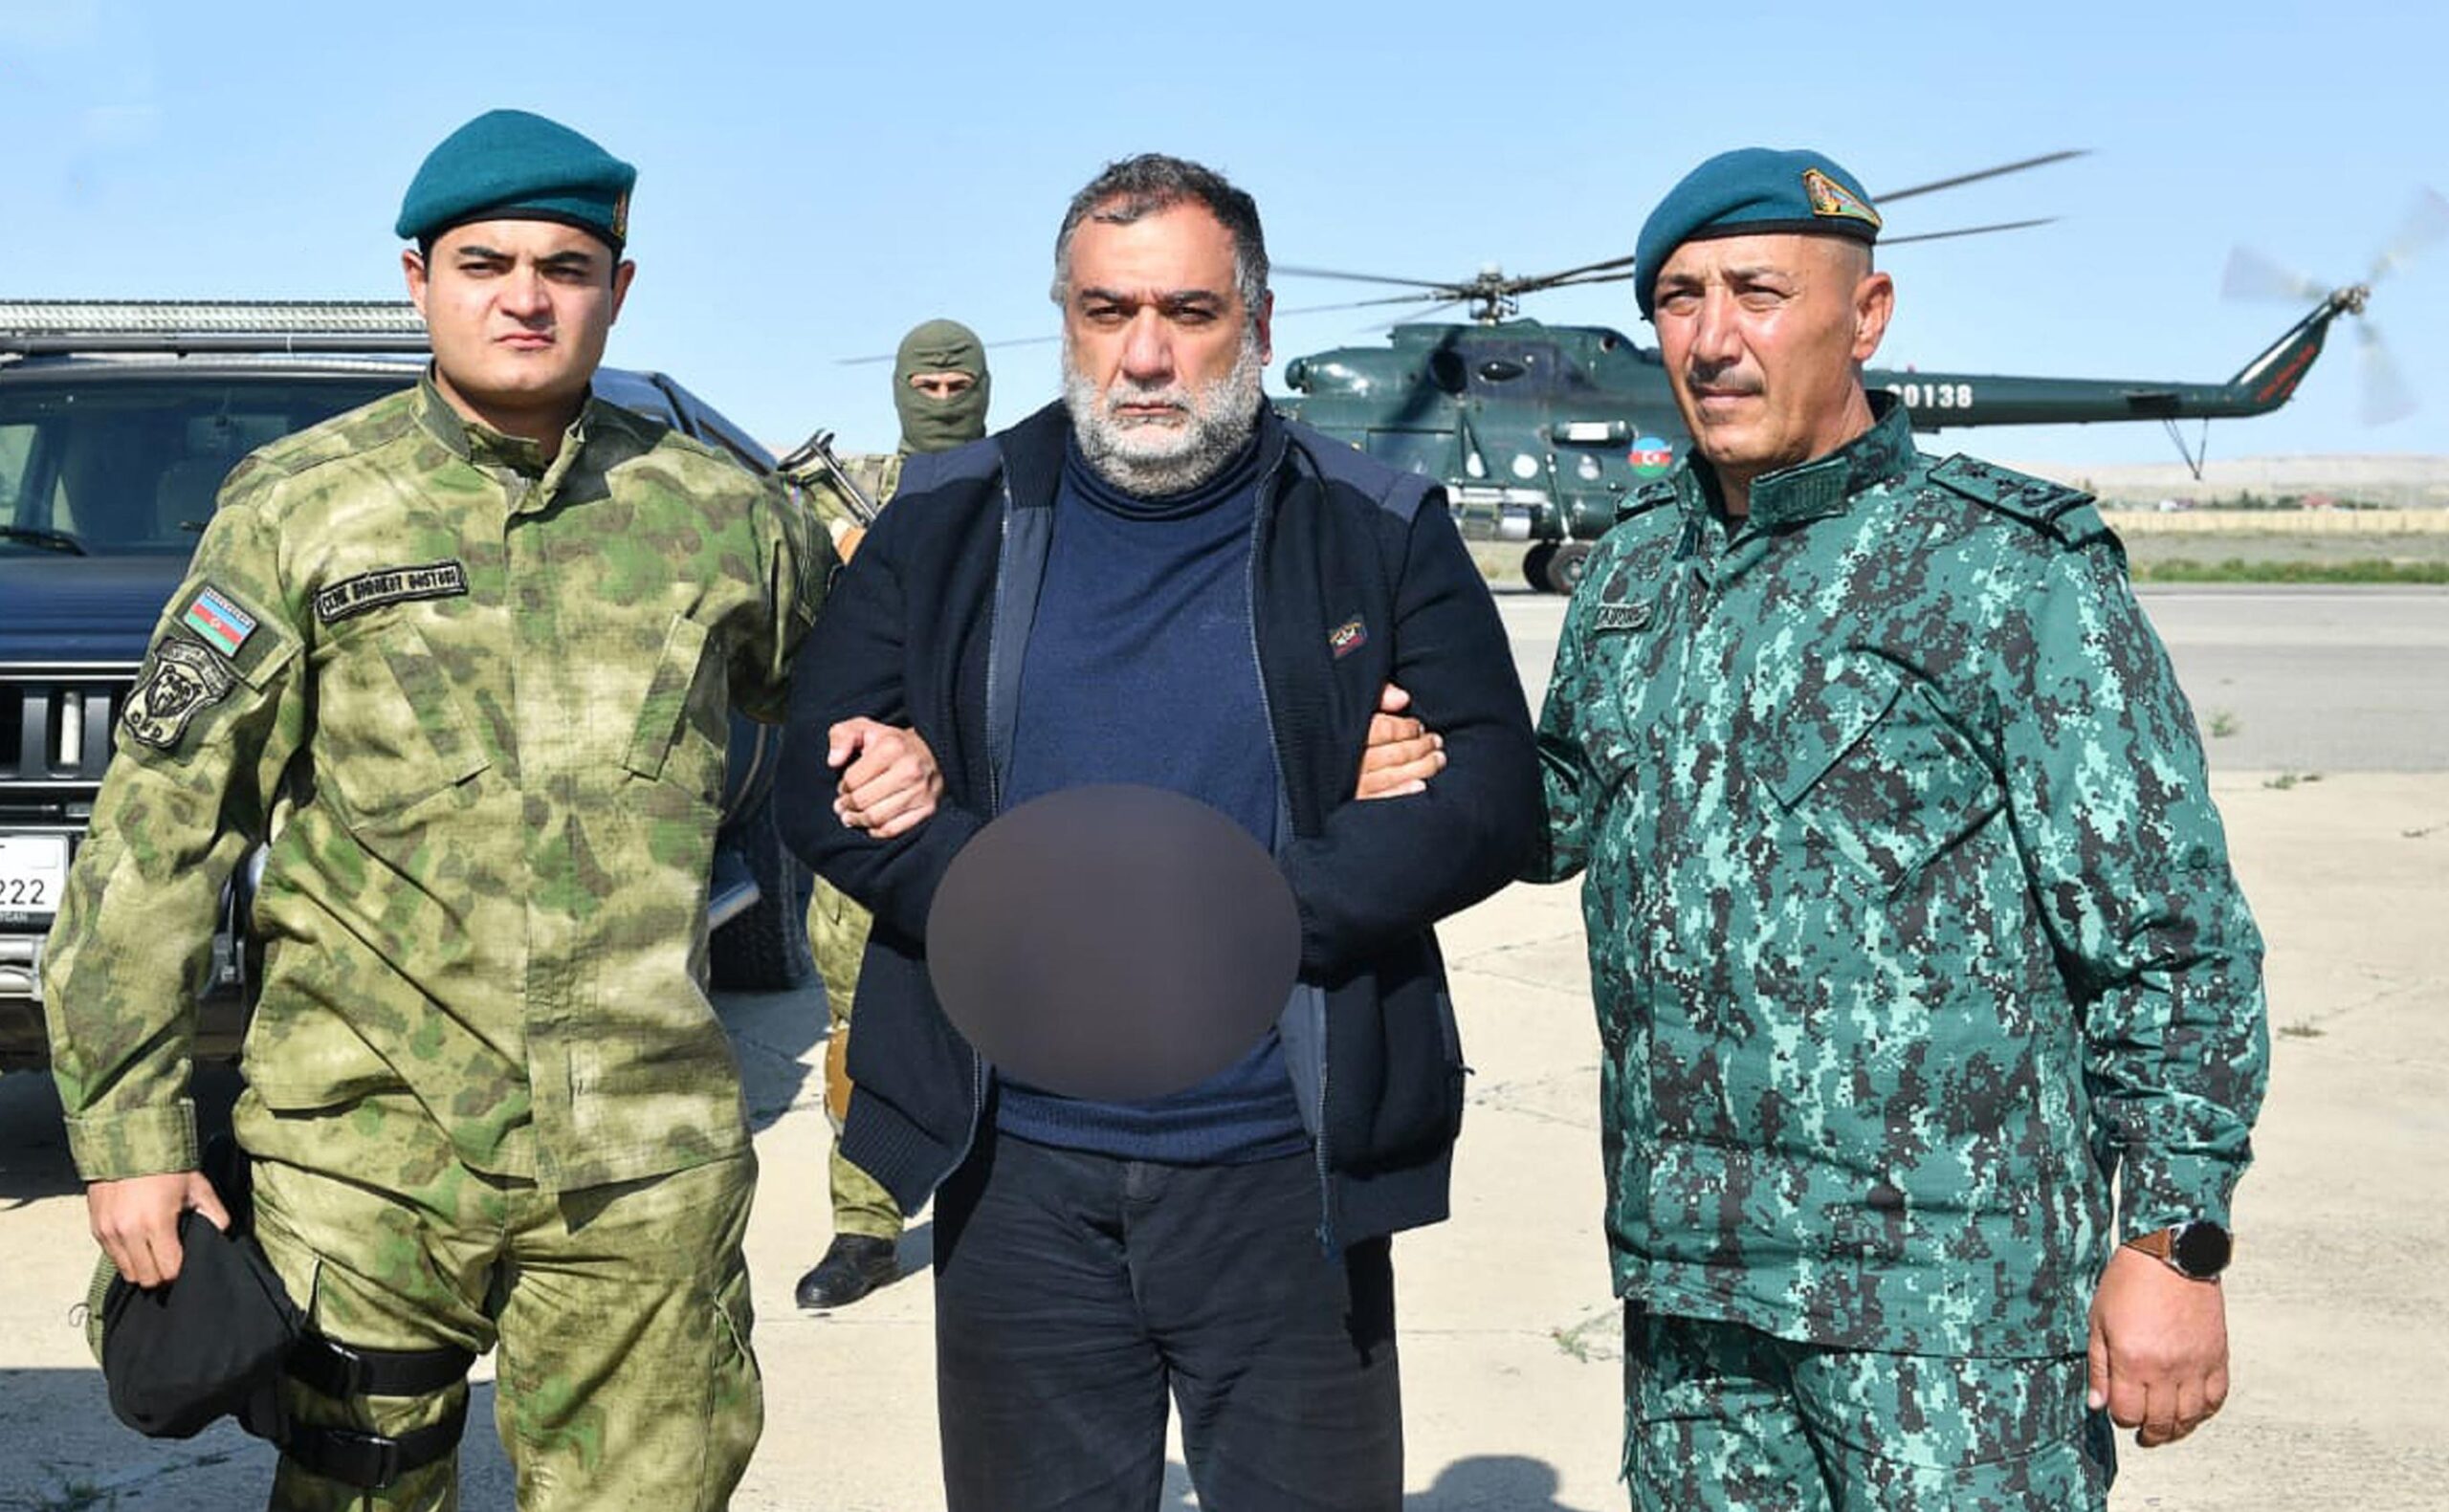 david-vardanyan:-«je-crains-pour-la-vie-de-mon-pere-emprisonne-depuis-200-jours-par-l’azerbaidjan»